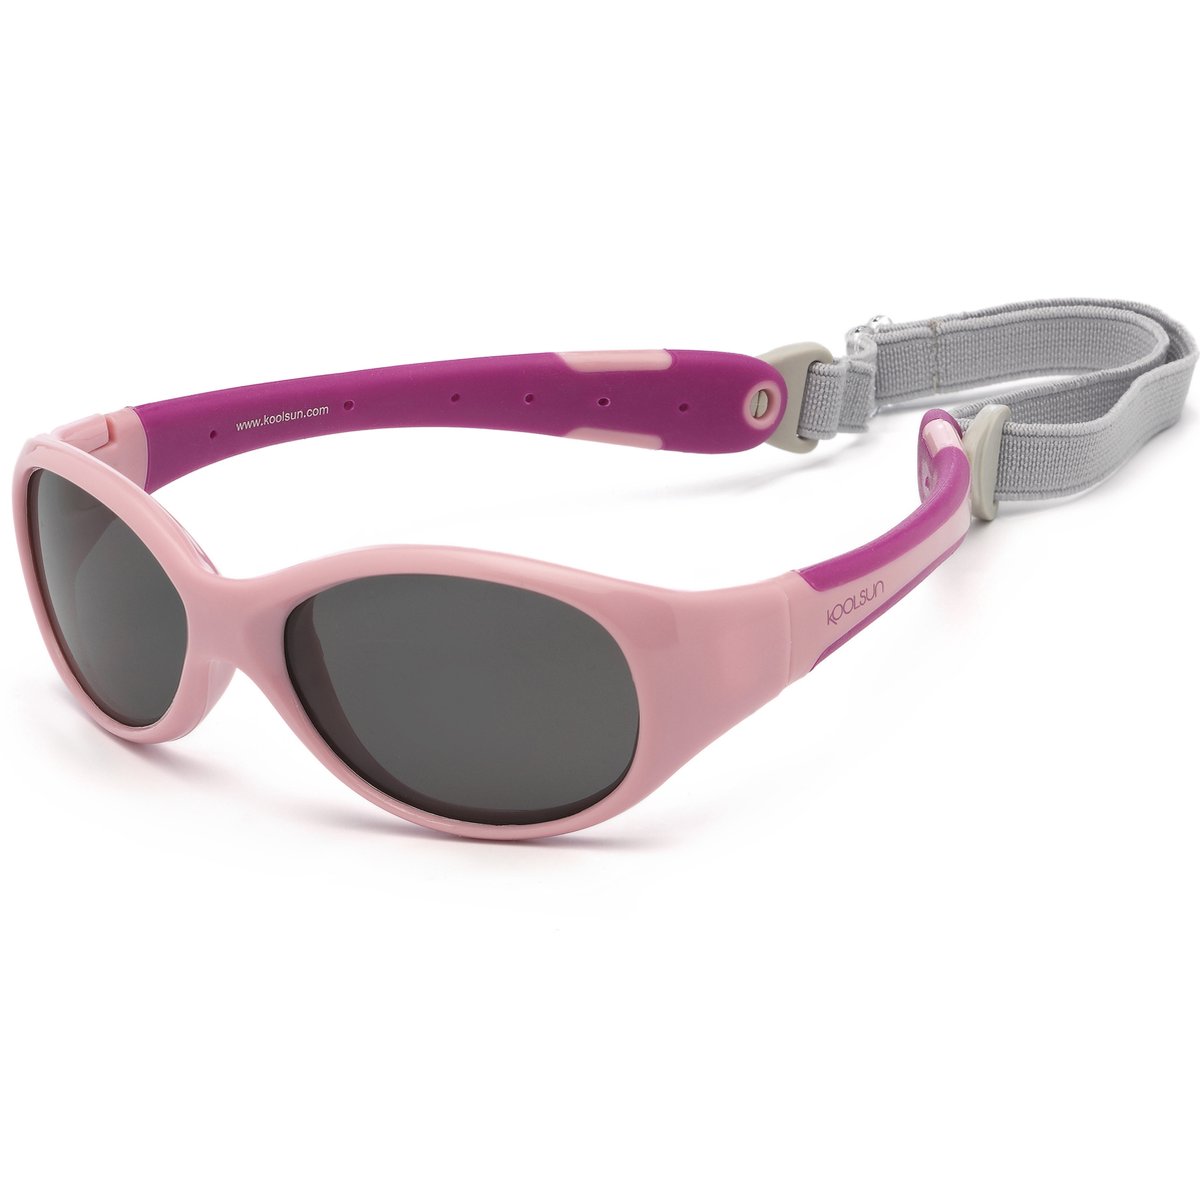 KOOLSUN - Flex - baby zonnebril - Roze Sachet Orchid - 0-3 jaar - UV400 Categorie 3